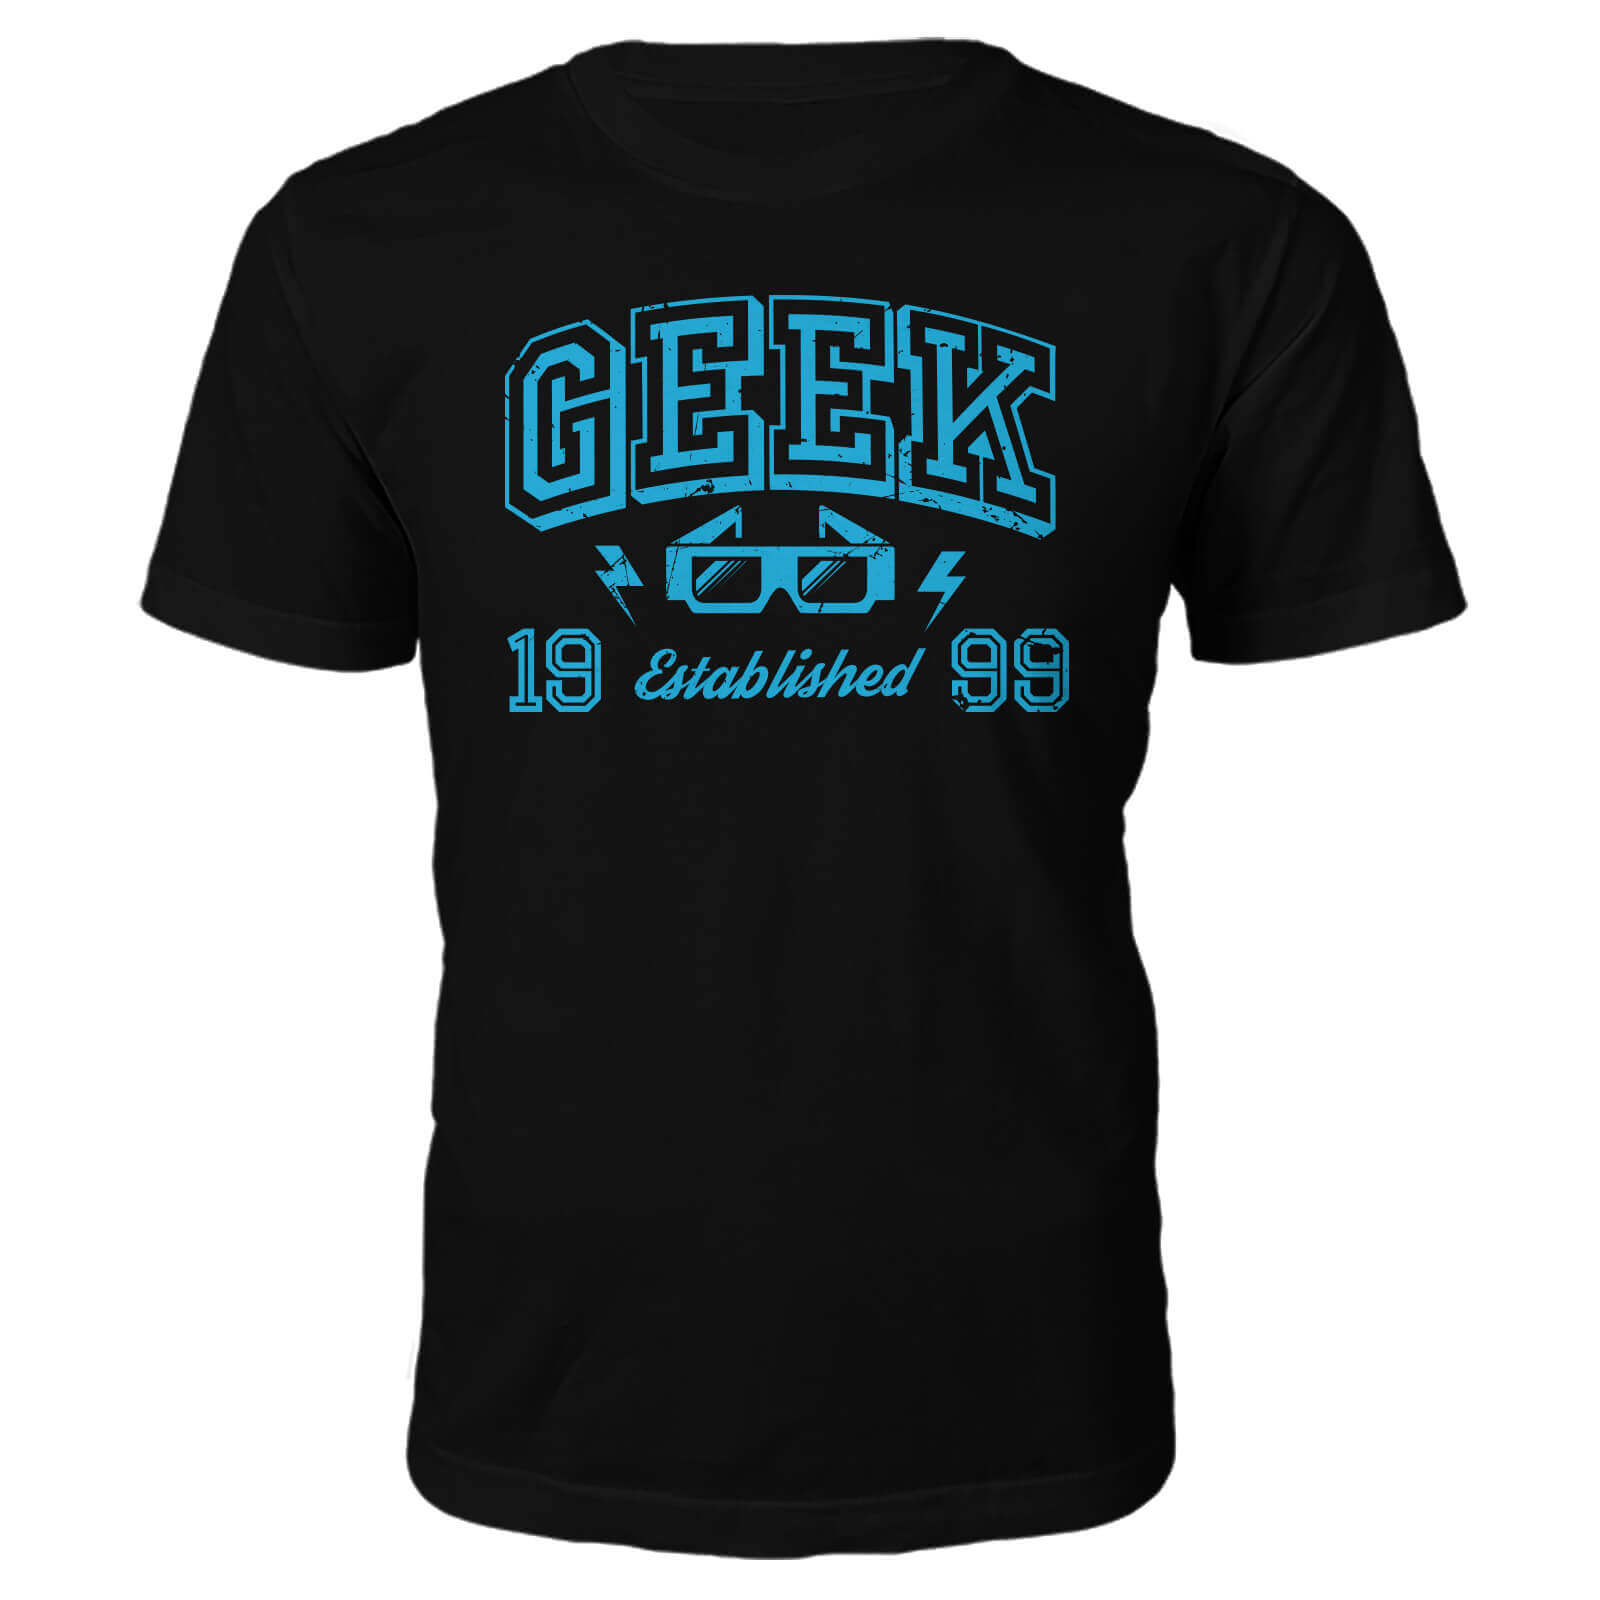 Geek Established 1990's T-Shirt- Black - S - 1999